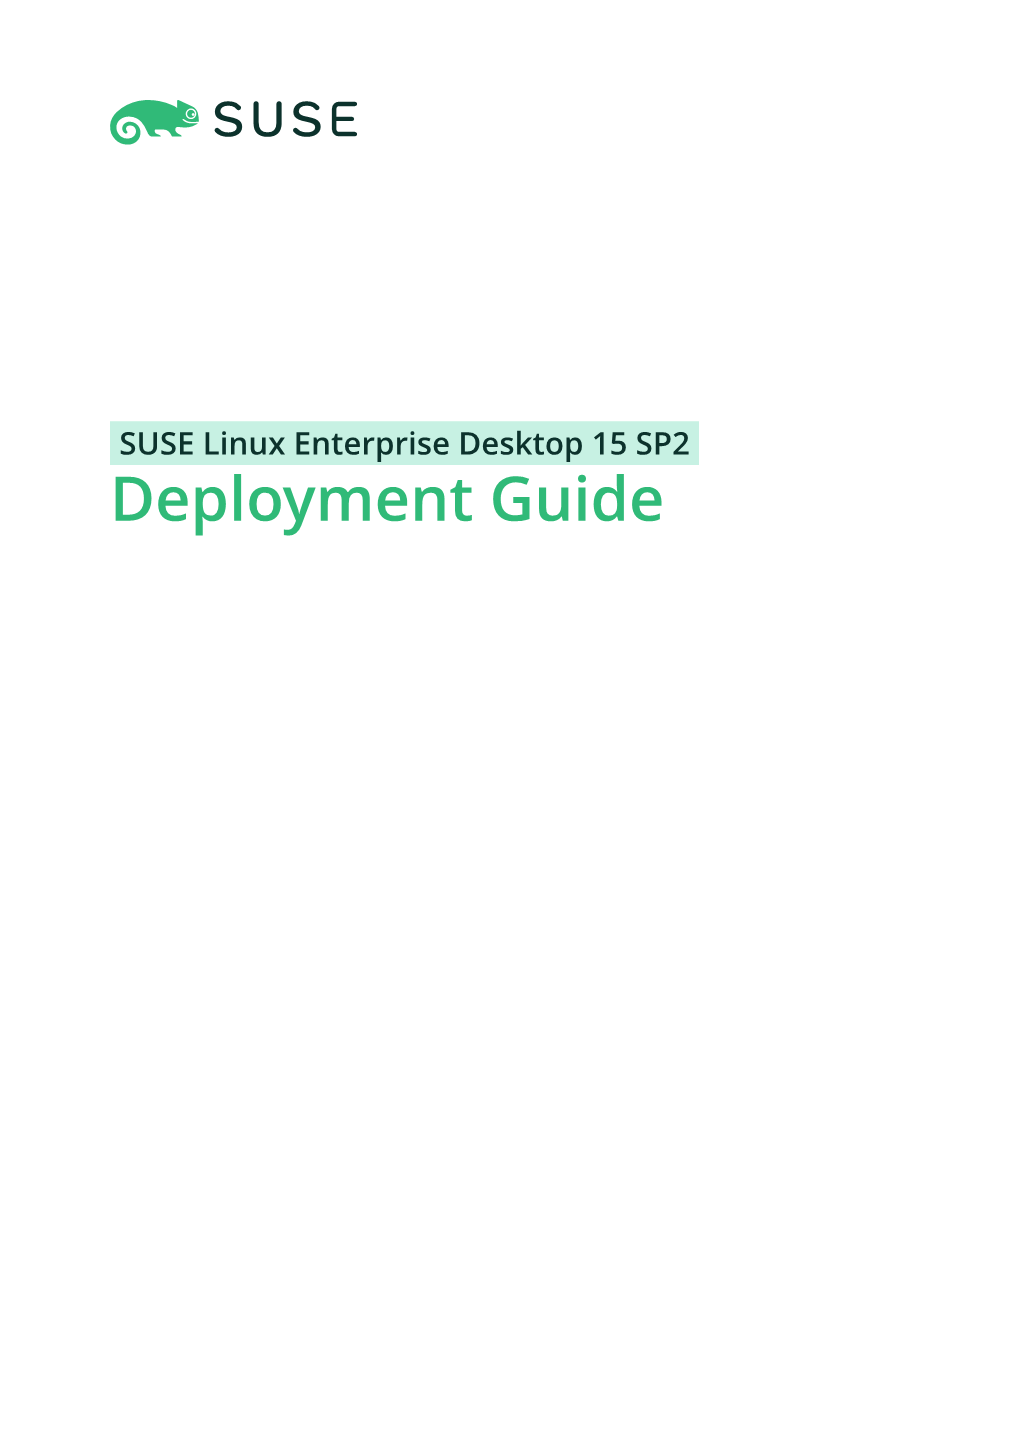 Deployment Guide Deployment Guide SUSE Linux Enterprise Desktop 15 SP2